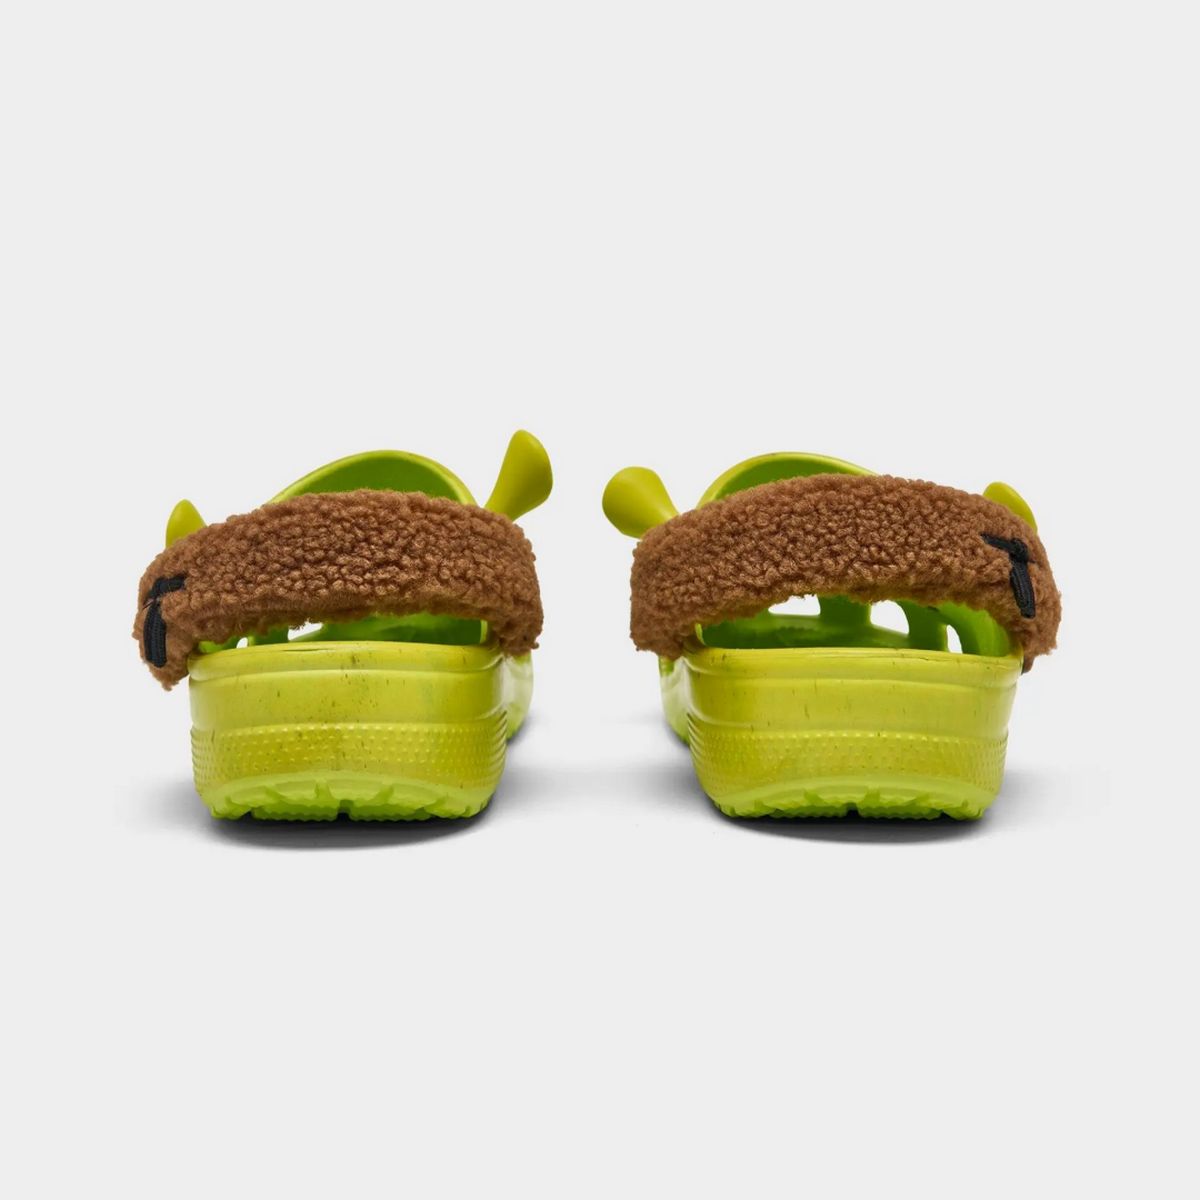 Les fans enthousiastes expriment déjà leur désir de précommander les Crocs Shrek. Toutefois, la date de sortie de cette chaussure reste un mystère. Crédit photo : Crocs